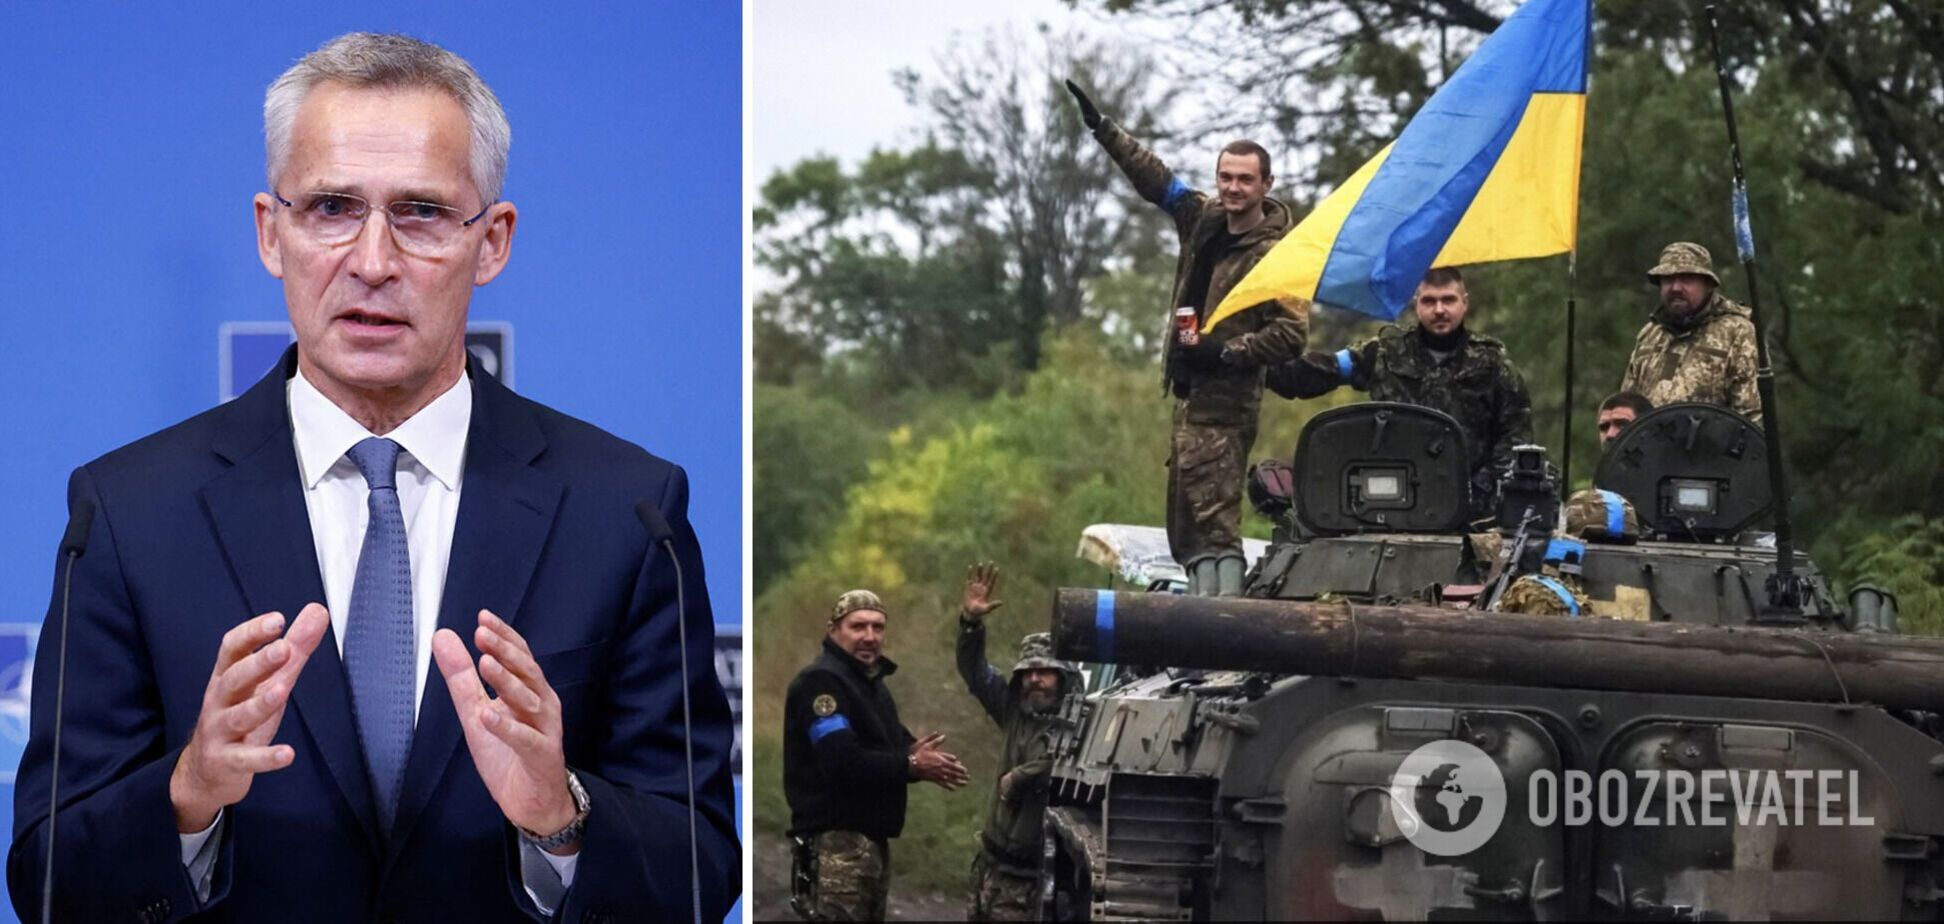 'Поступки Росії будуть катастрофою': Столтенберг зробив заяву про війну в Україні і недопустимість прийняття умов Кремля